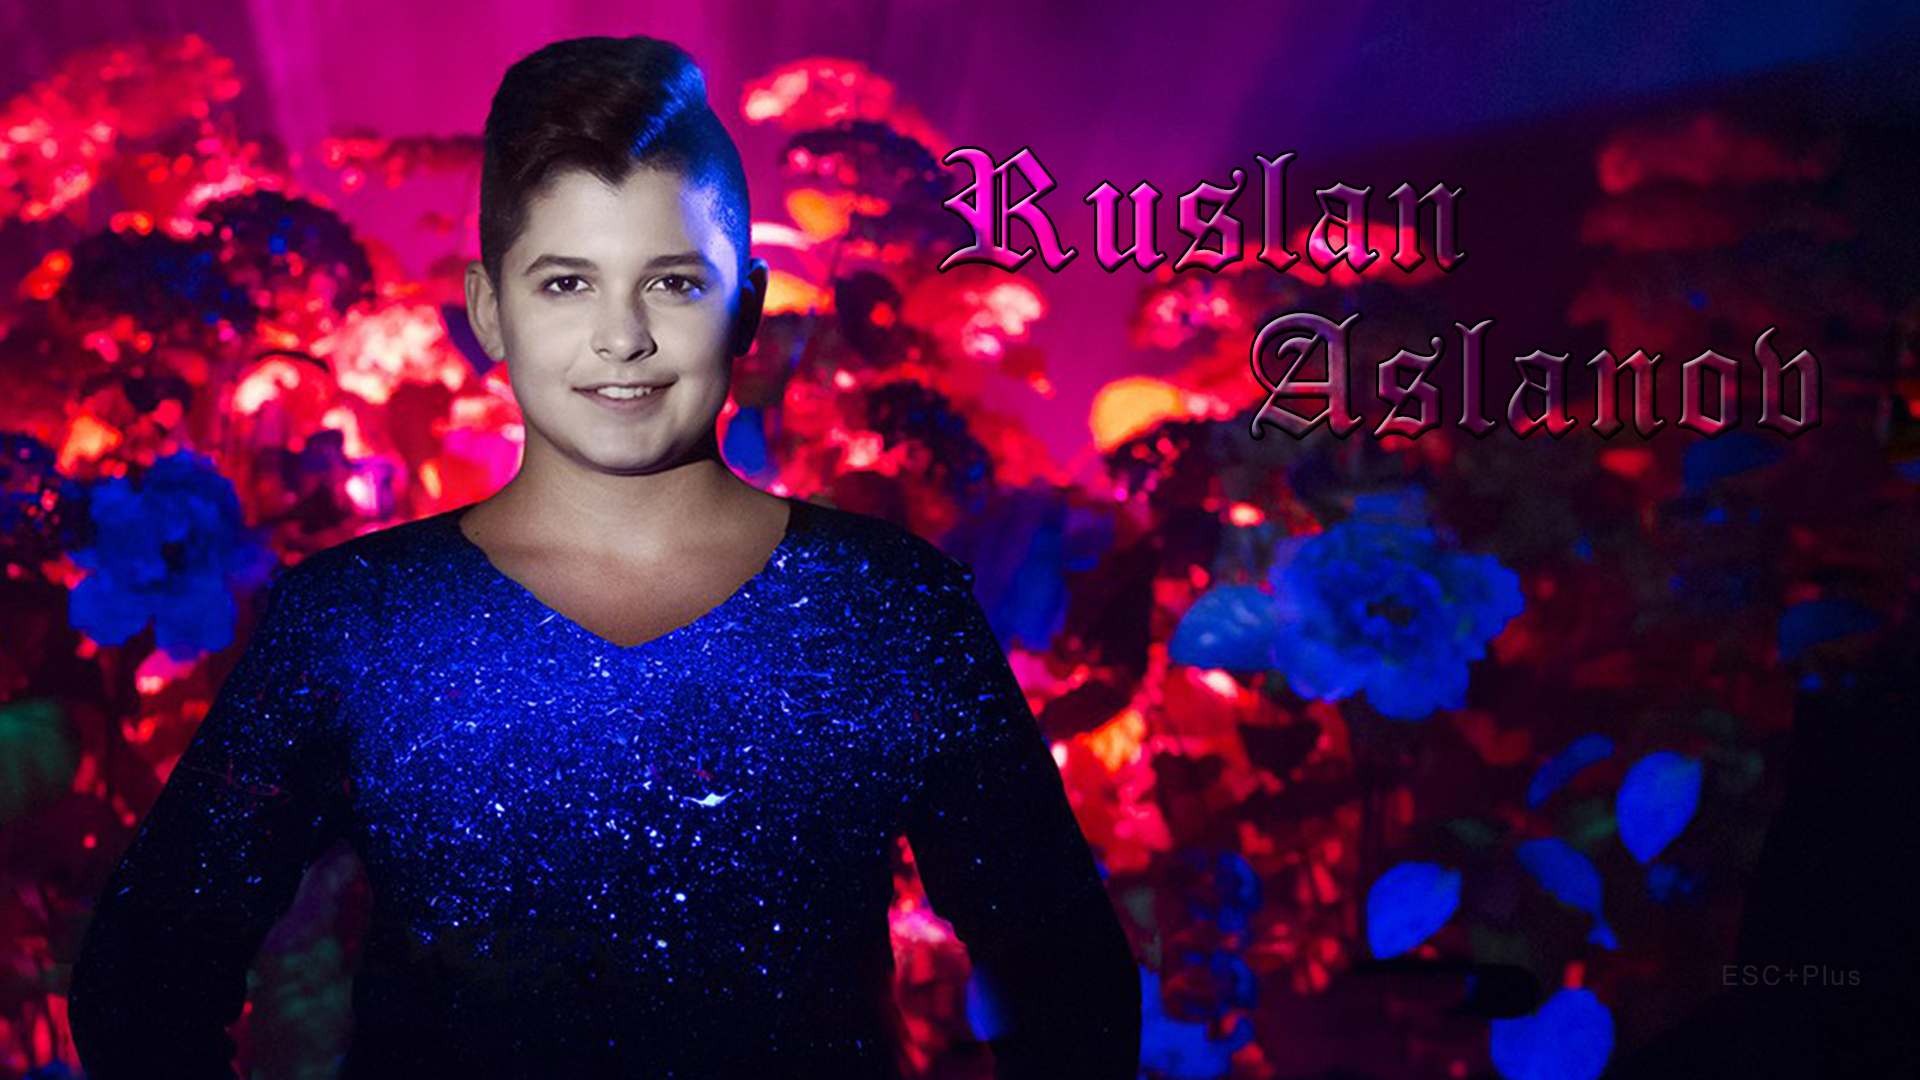 Junior Eurovision: Ruslan Aslanov releases final version for Belarussian entry “Volshebstvo” (Magic)!